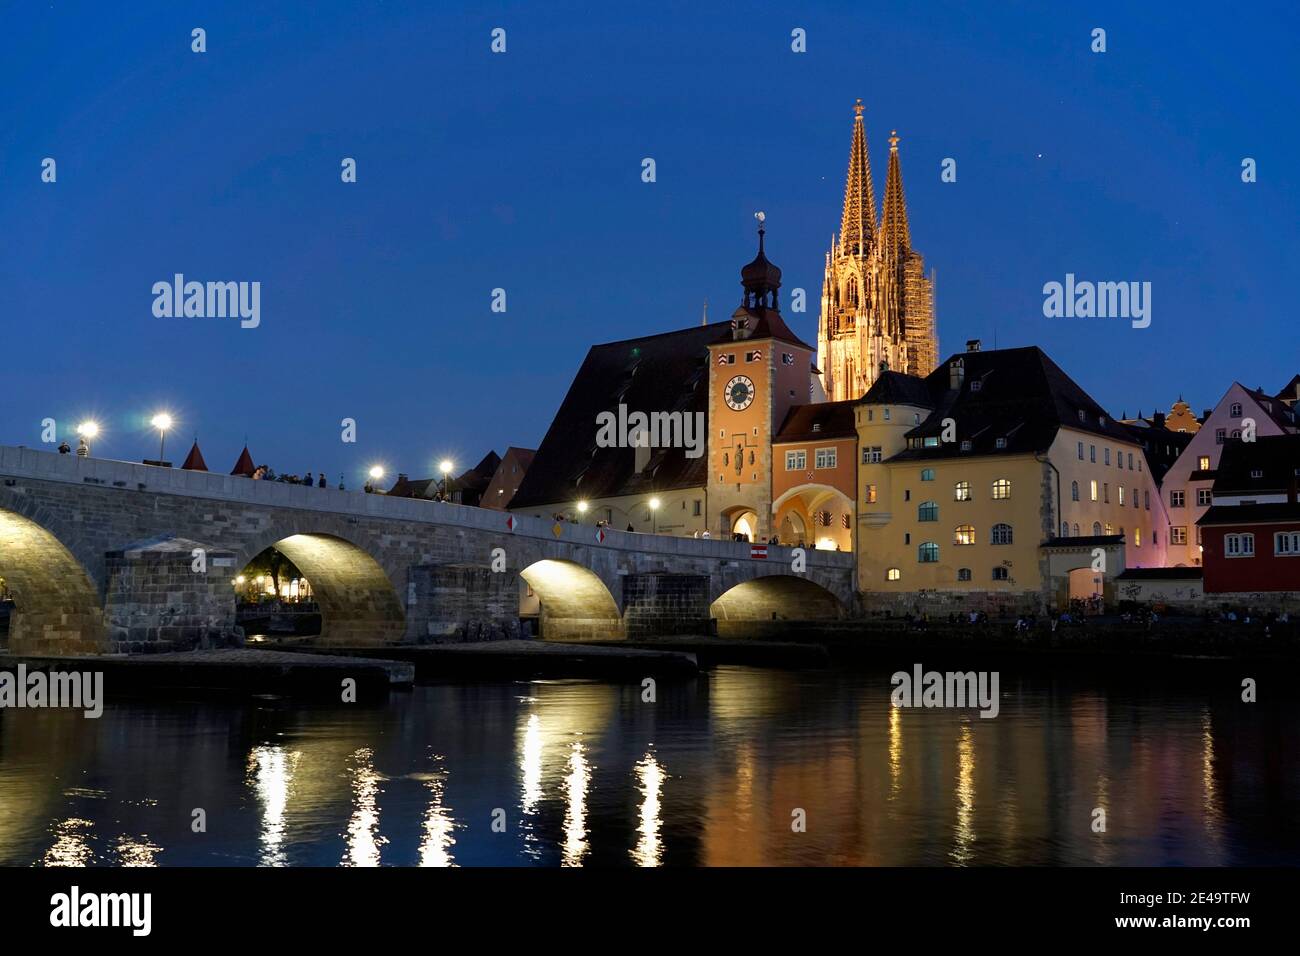 Deutschland, Bayern, Oberpfalz, Regensburg, Donau, Steinerne Brücke, Brückentor, Dom, abends, beleuchtet Foto Stock